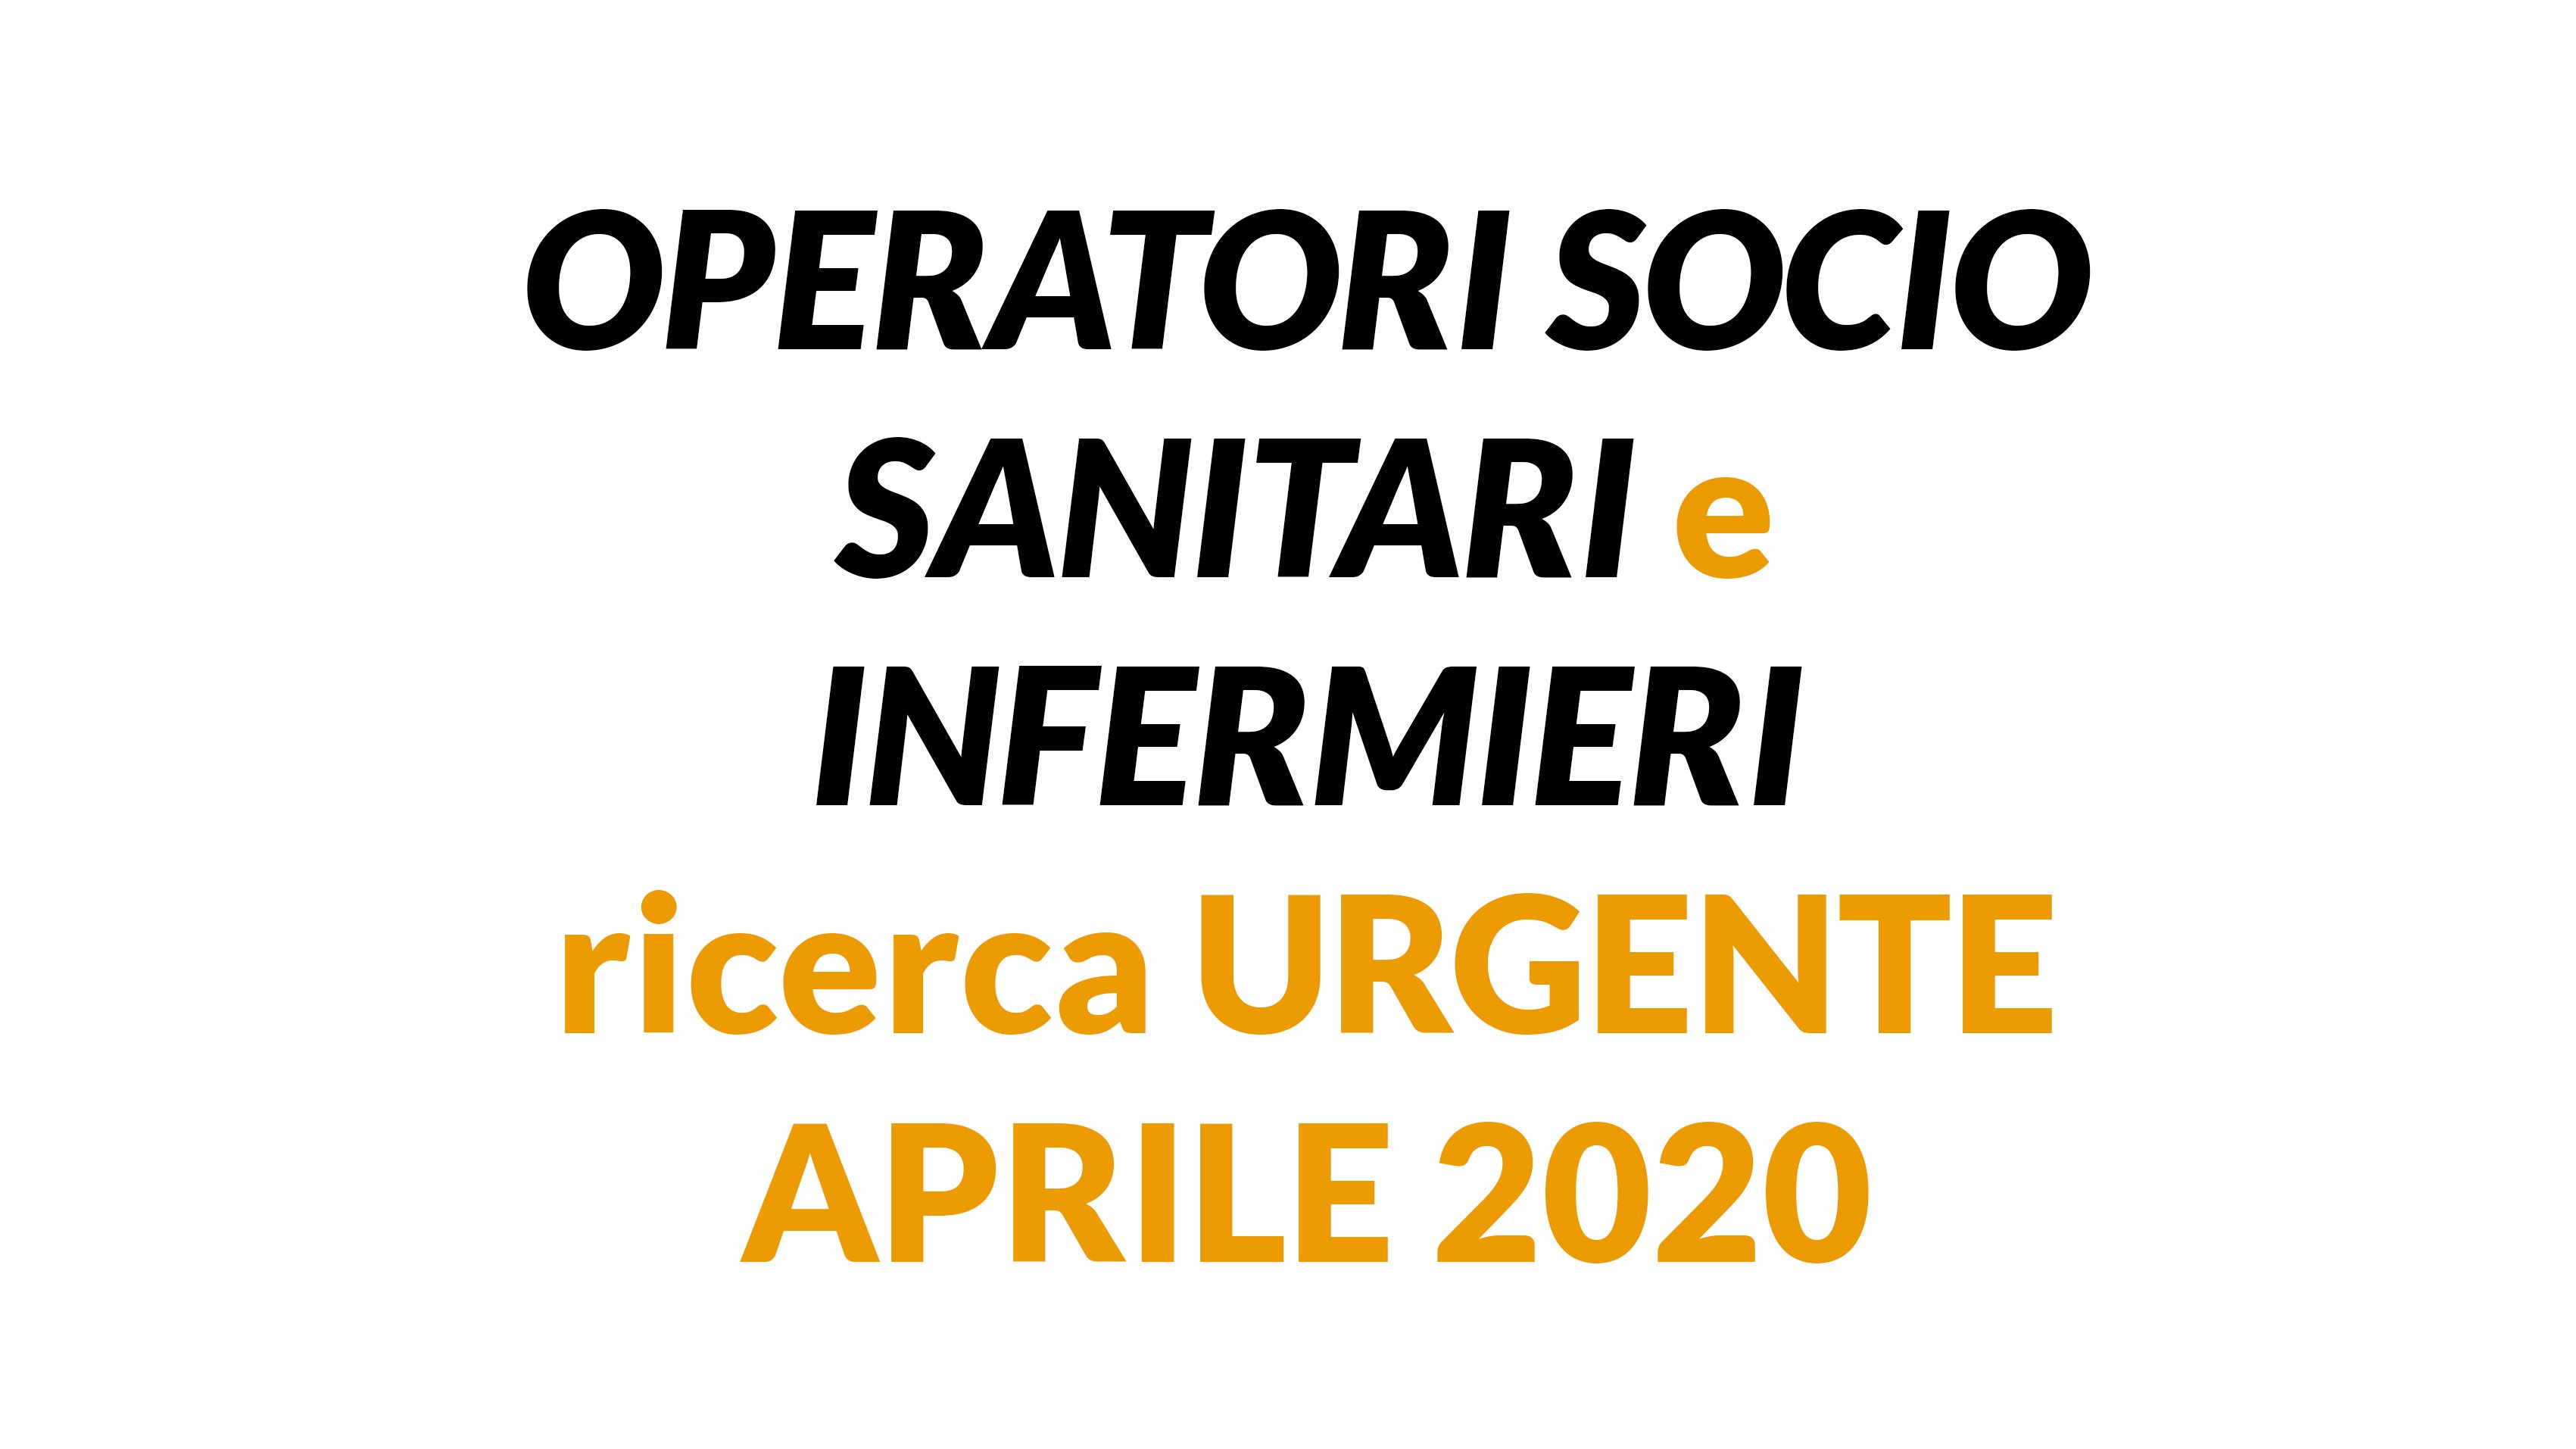 OPERATORI SOCIO SANITARI e INFERMIERI ricerca URGENTE APRILE 2020